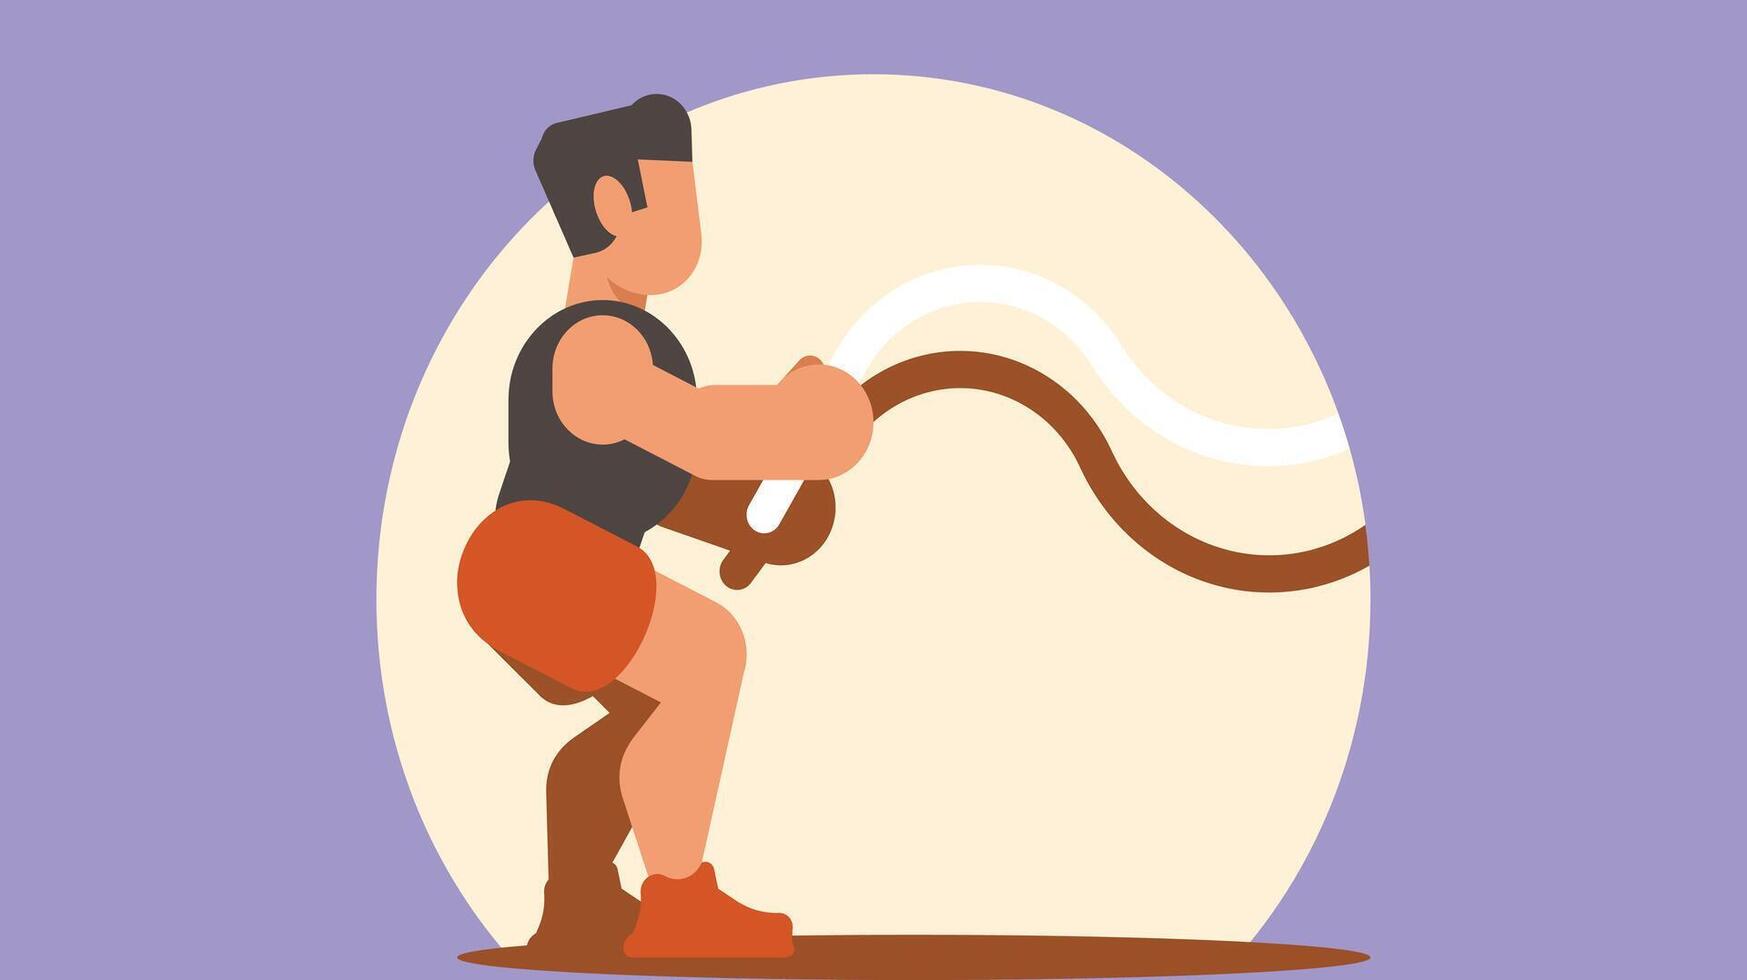 een athelete opleiding in de Sportschool met touwen vector illustratie